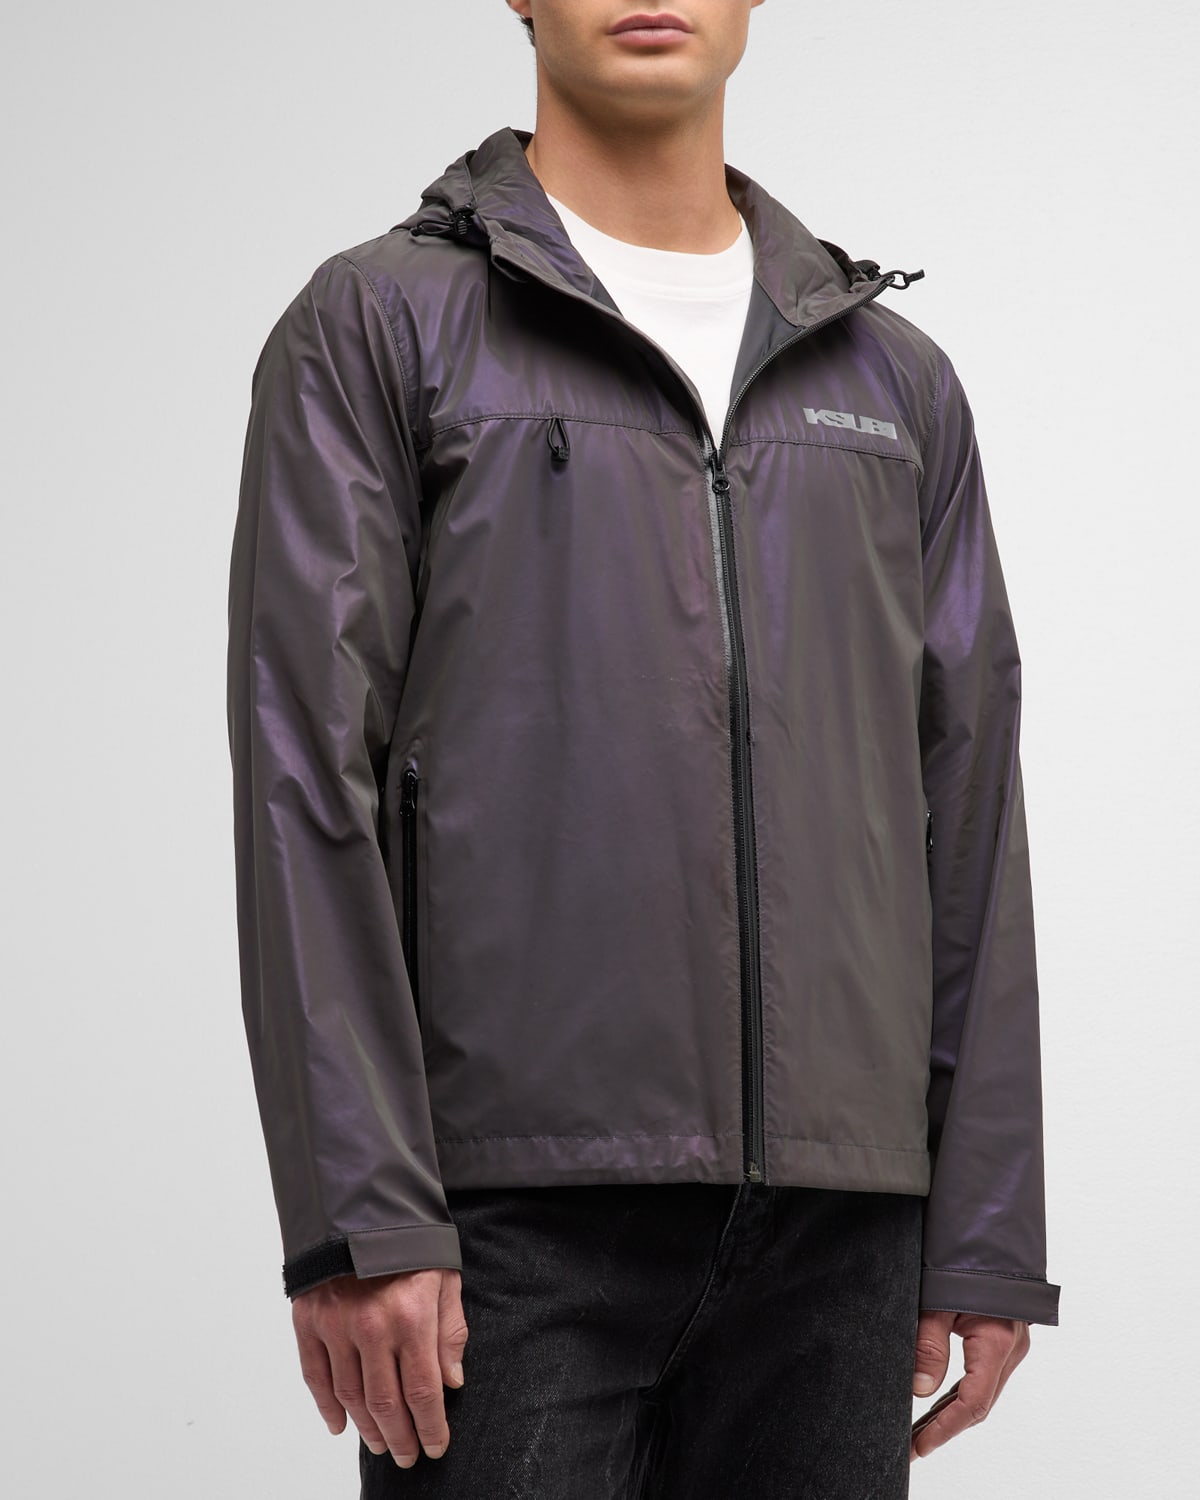 Men's Reflective Coated Water-Resistant Jacket